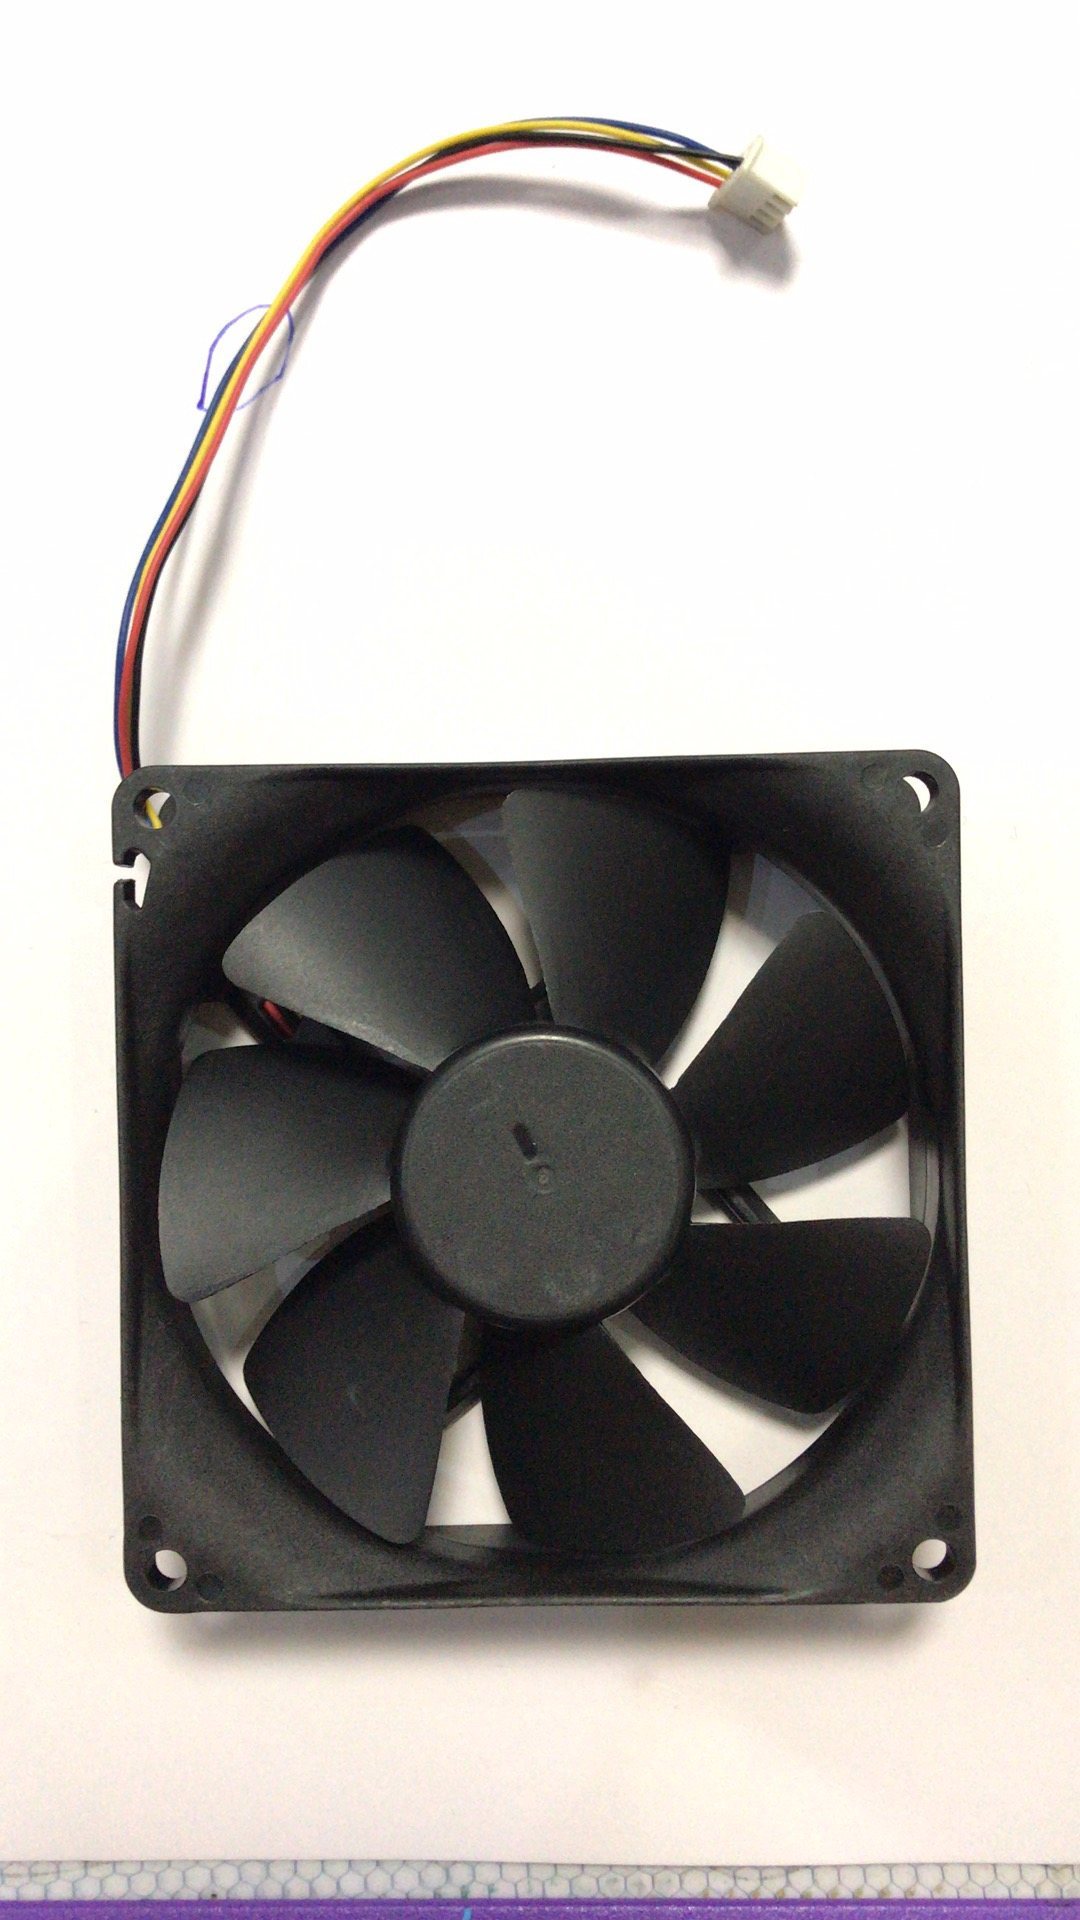 ADDA AD0924XB-A7BGP 24V 0.30A cooling fans